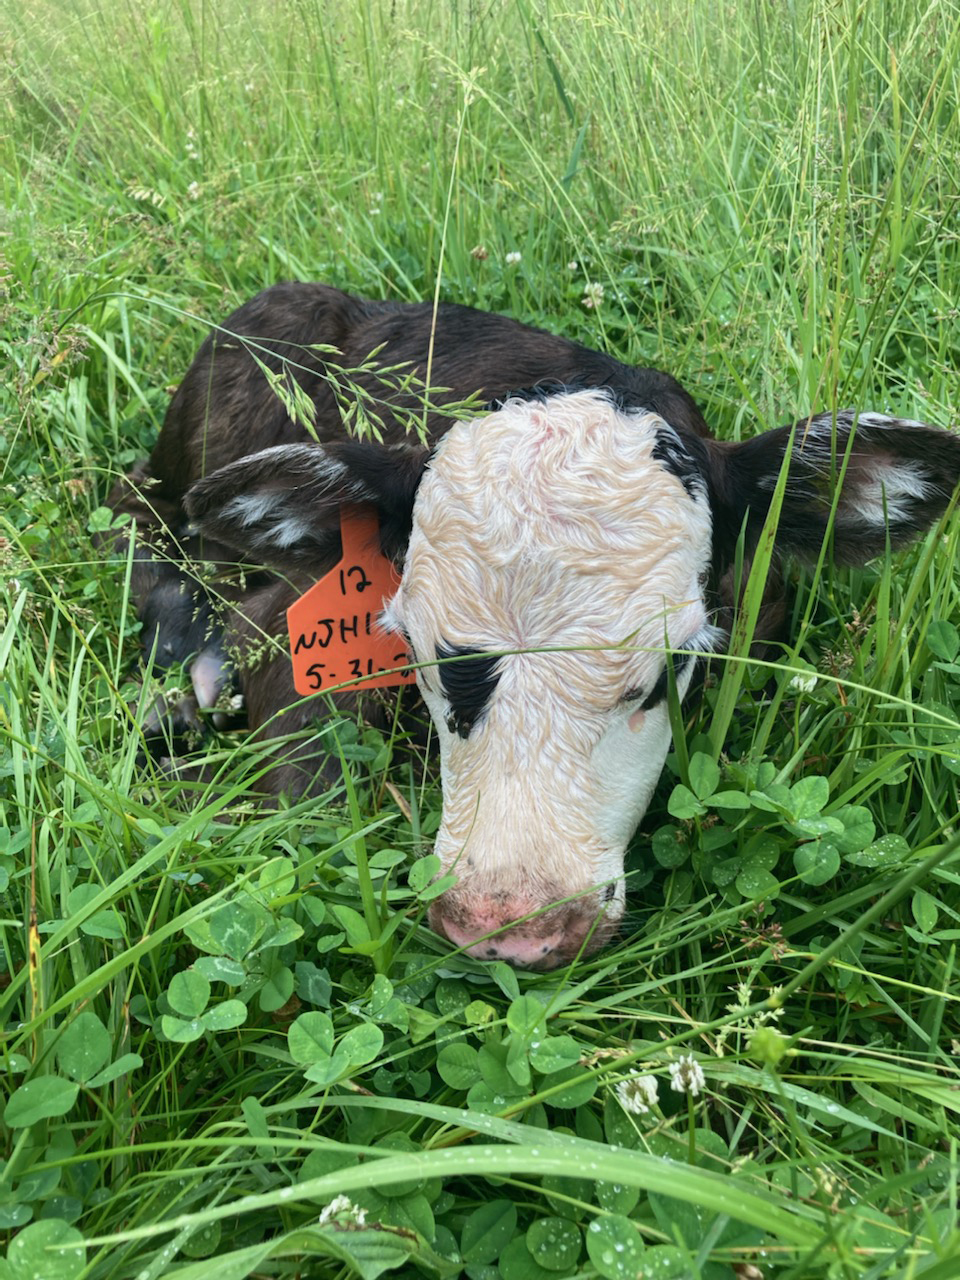 sleepy calf taking an afternoon nap